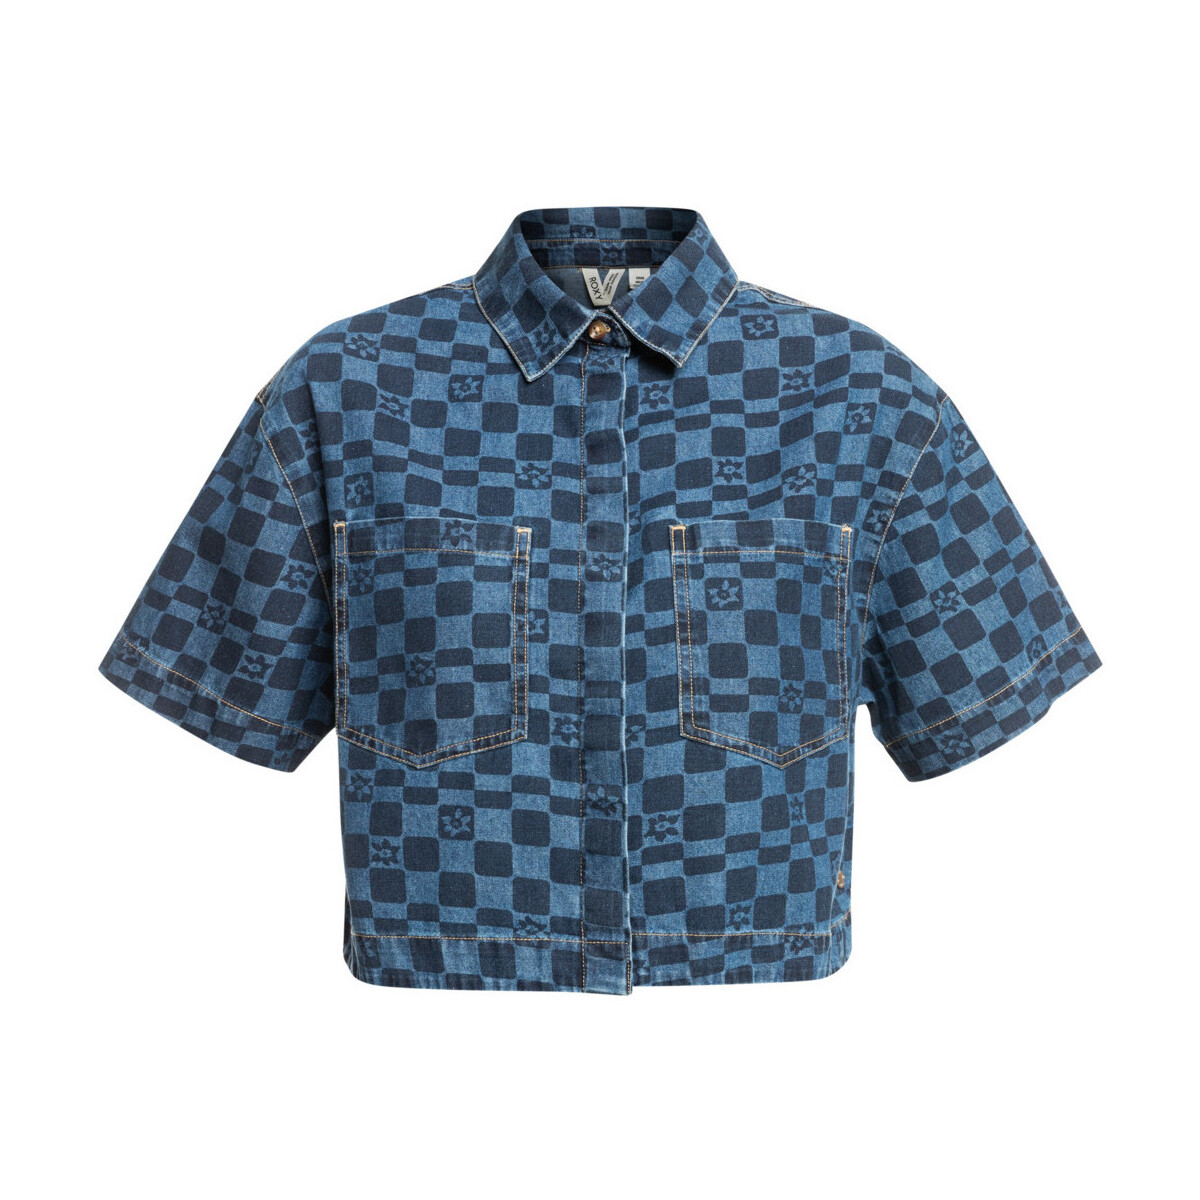 Vêtements Fille Chemises manches courtes Roxy Blue Wave Club Printed Bleu